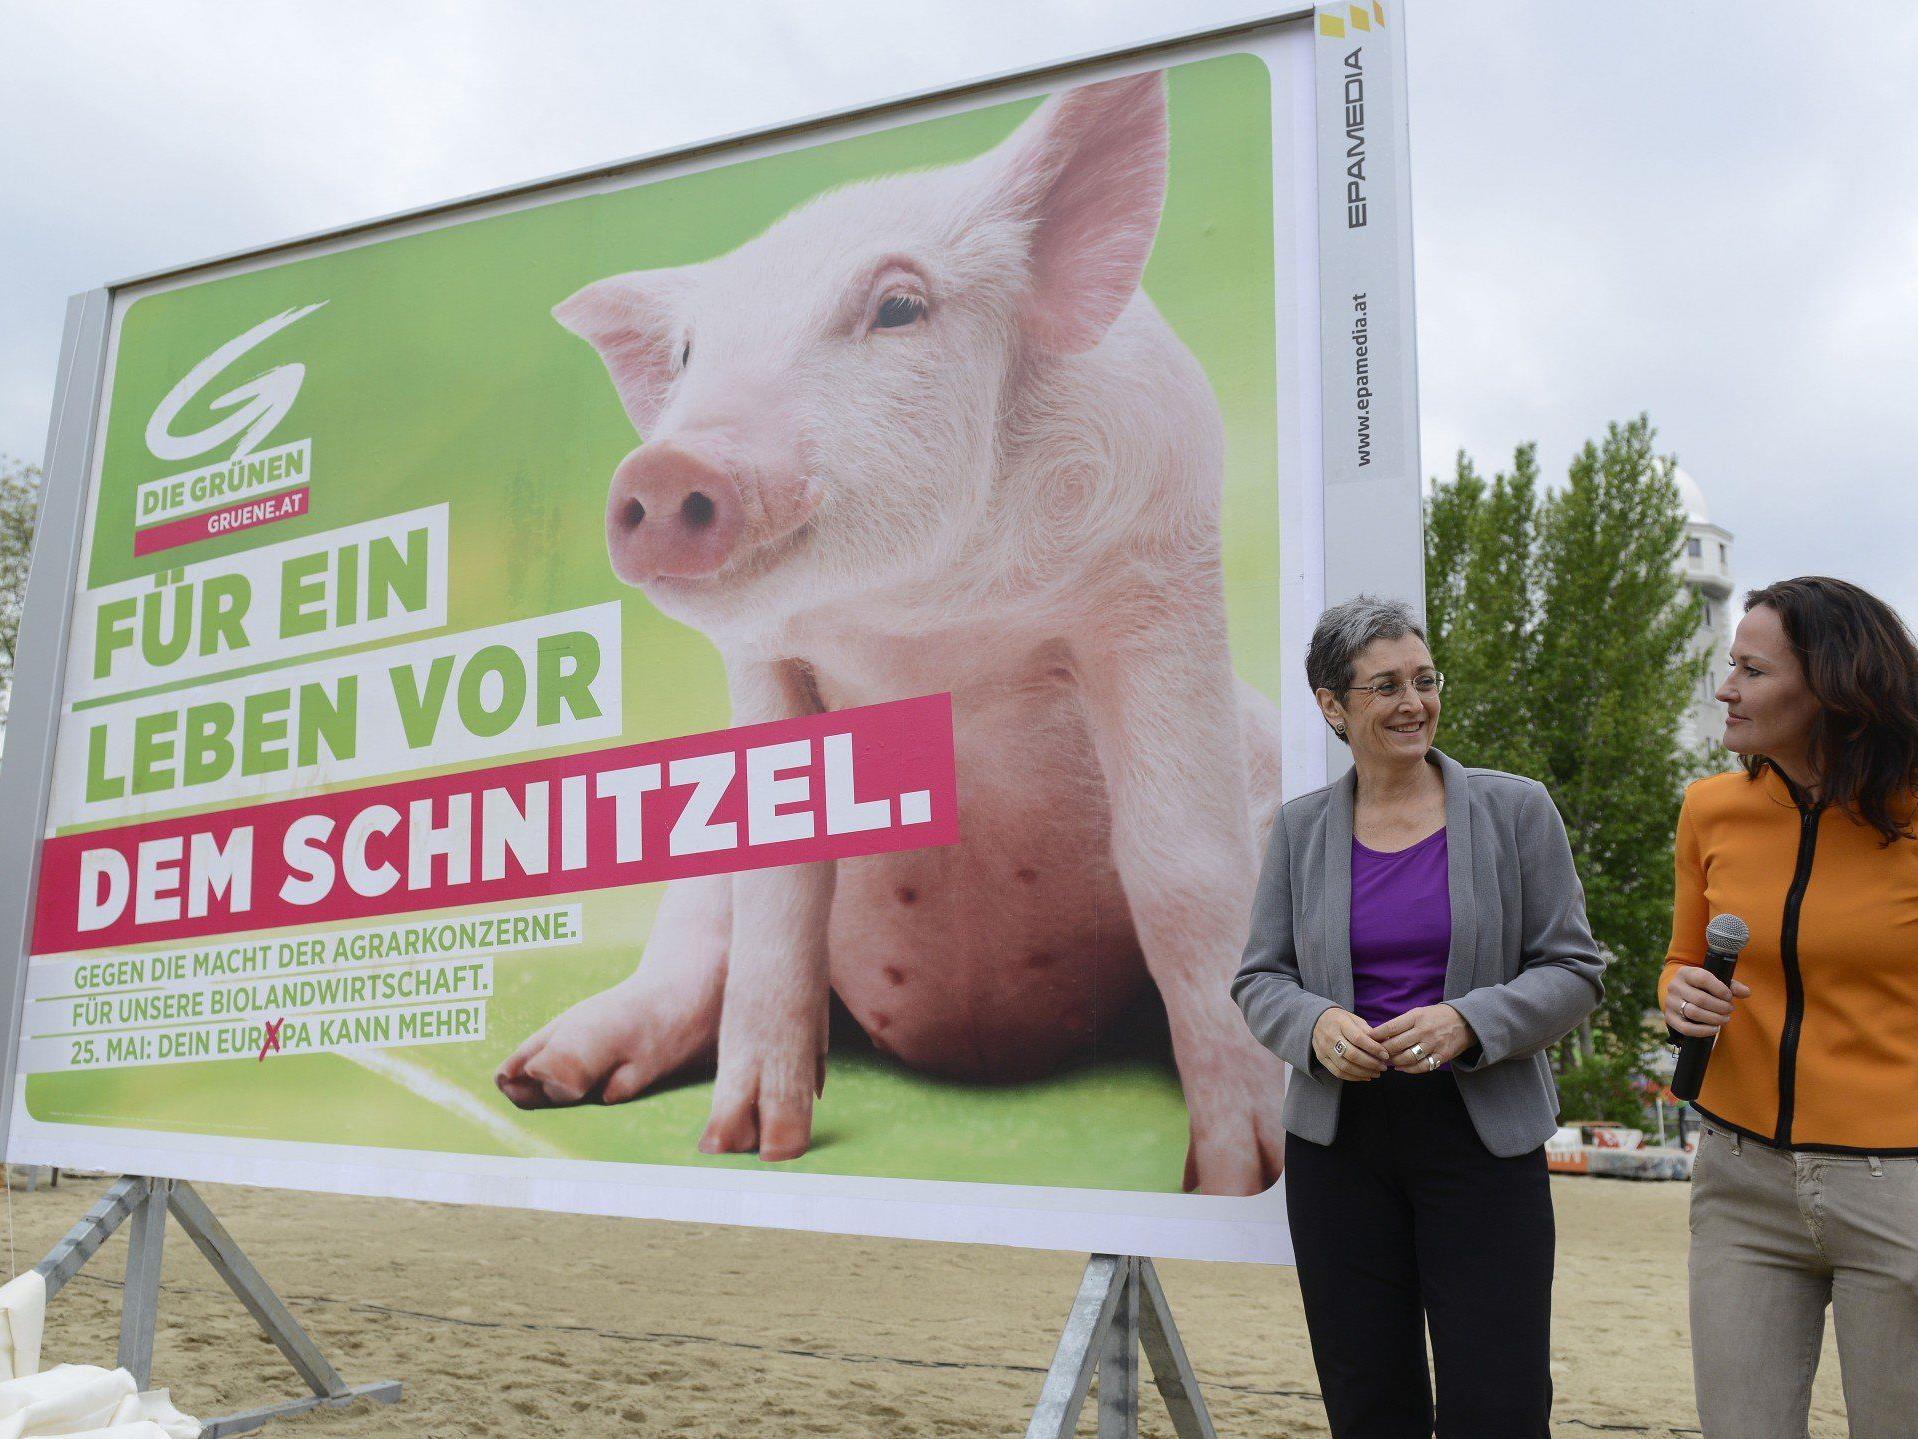 Das sind die neuen Plakate der Grünen zur Europawahl 2014.